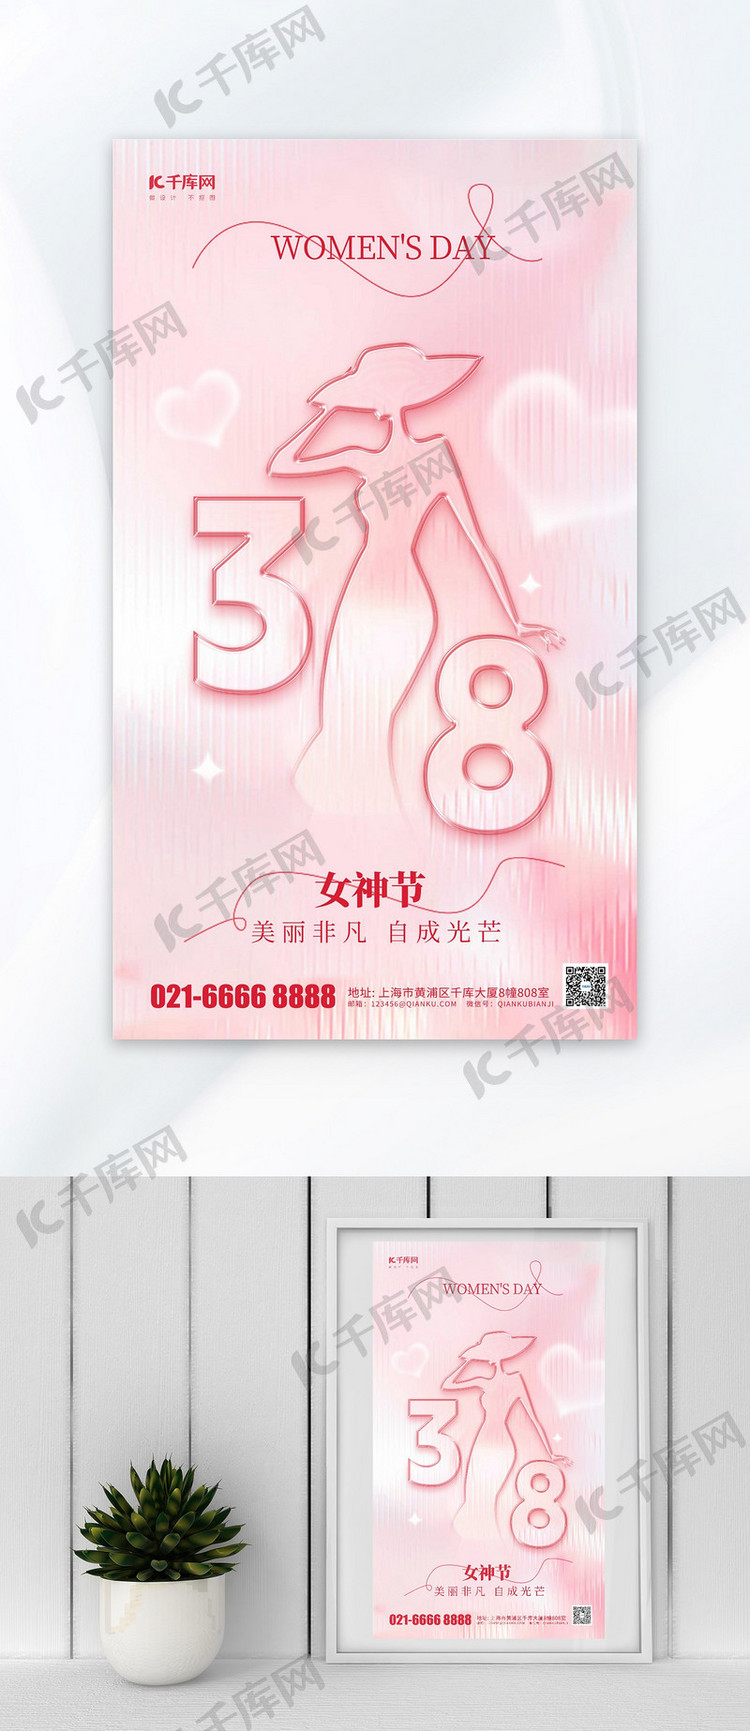 38妇女节节日问候祝福粉色简约风海报海报模版